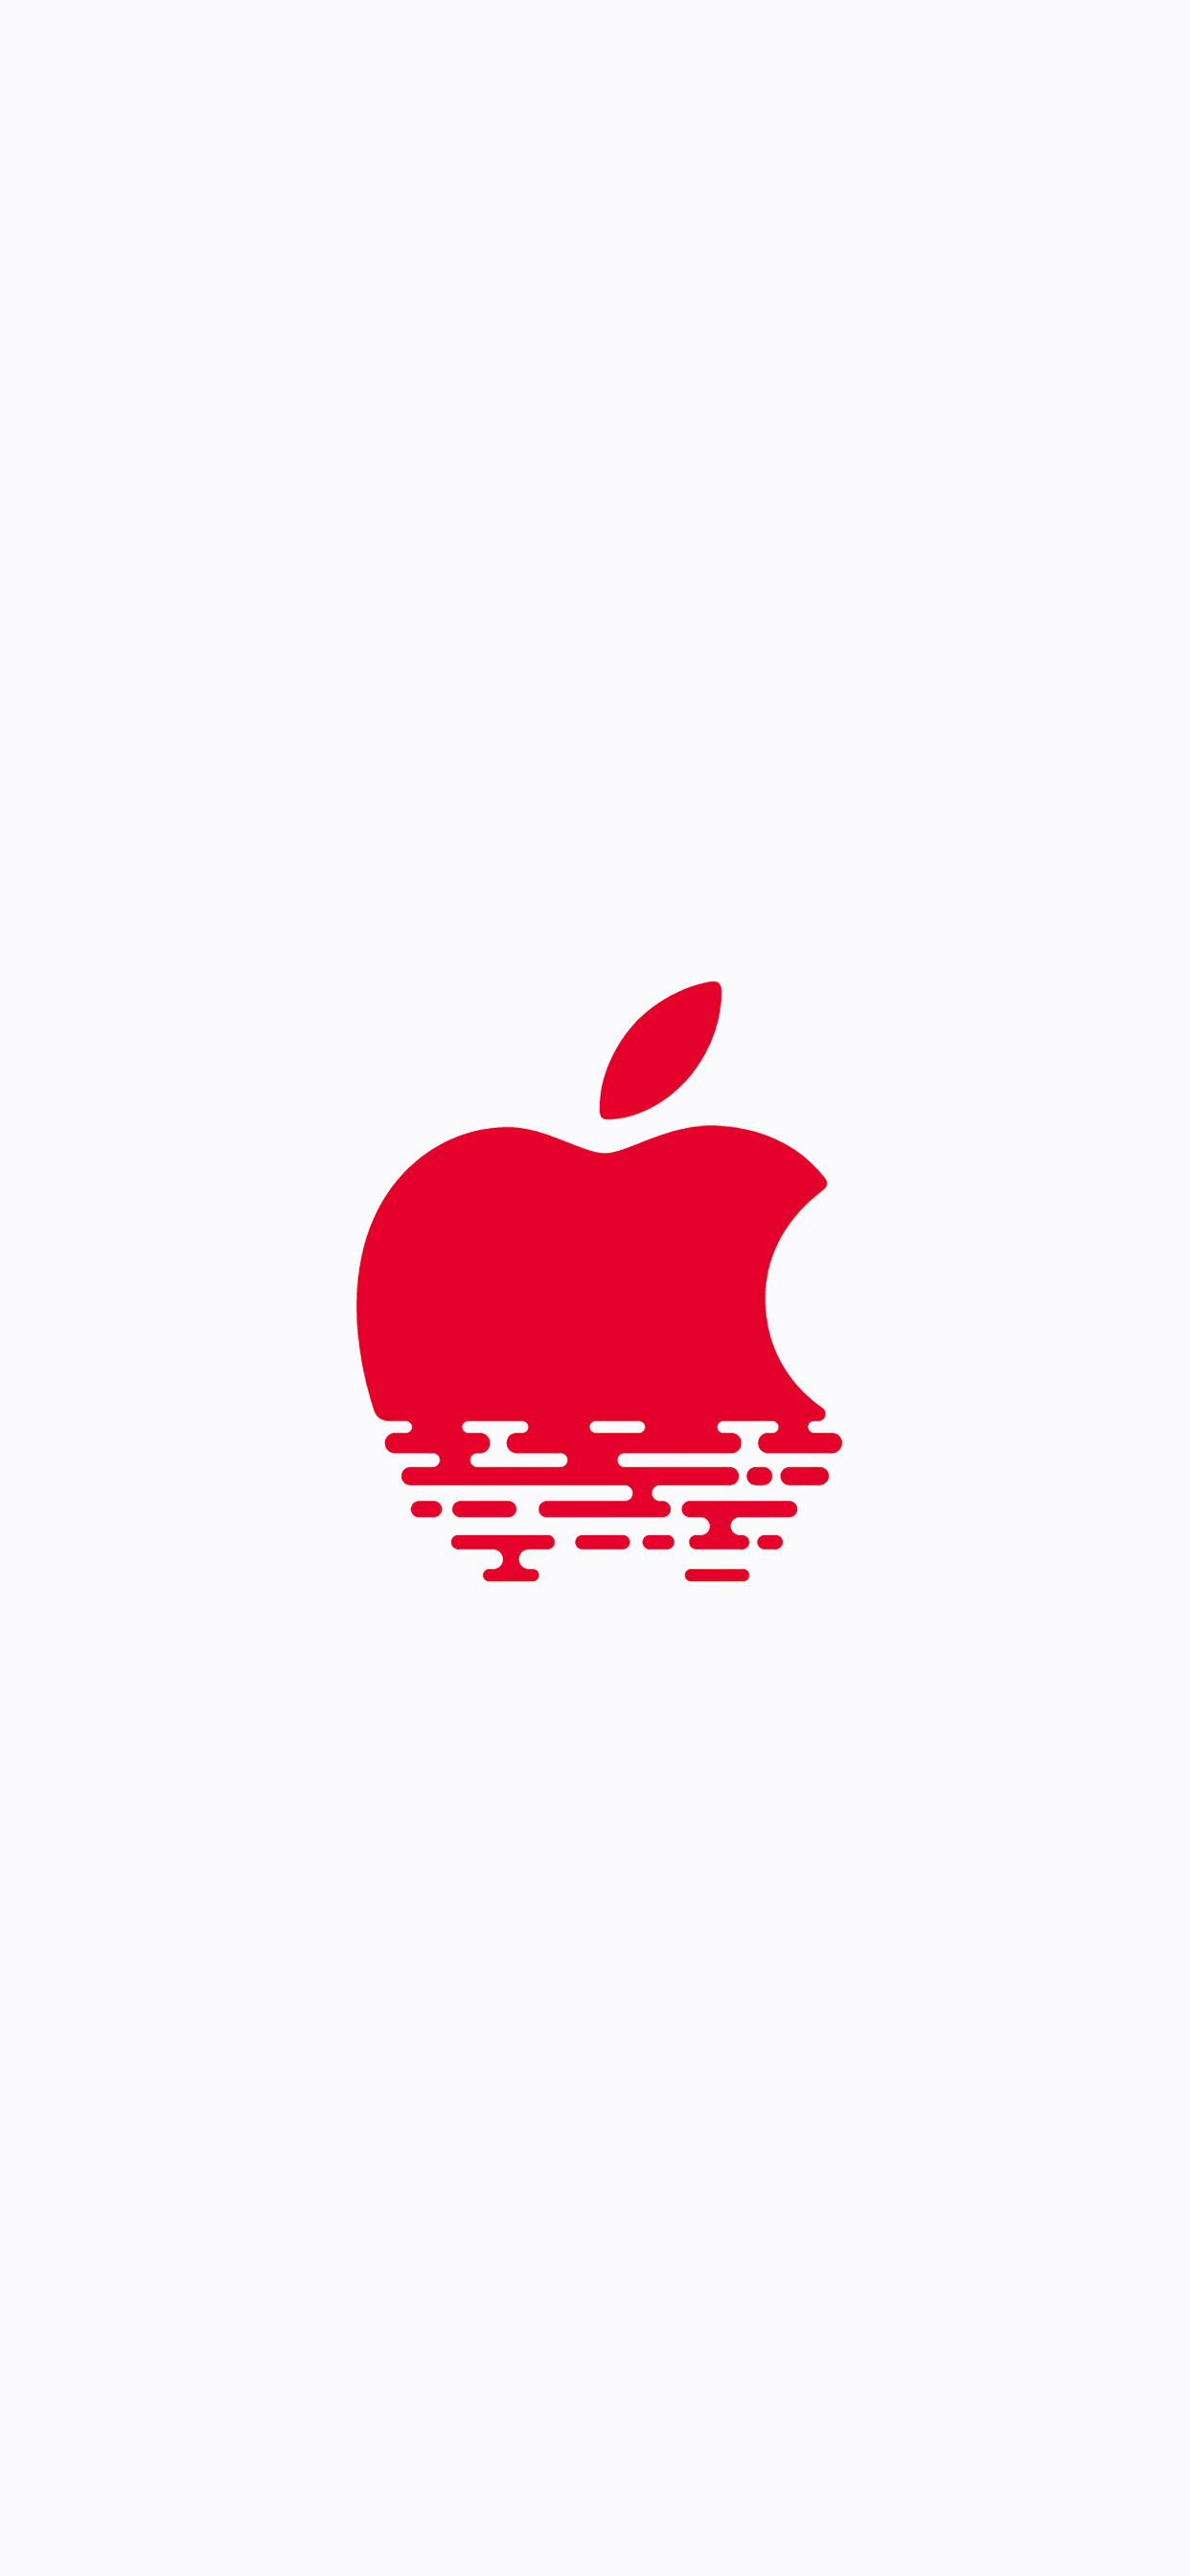 一组“Apple logo”全尺寸高清壁纸